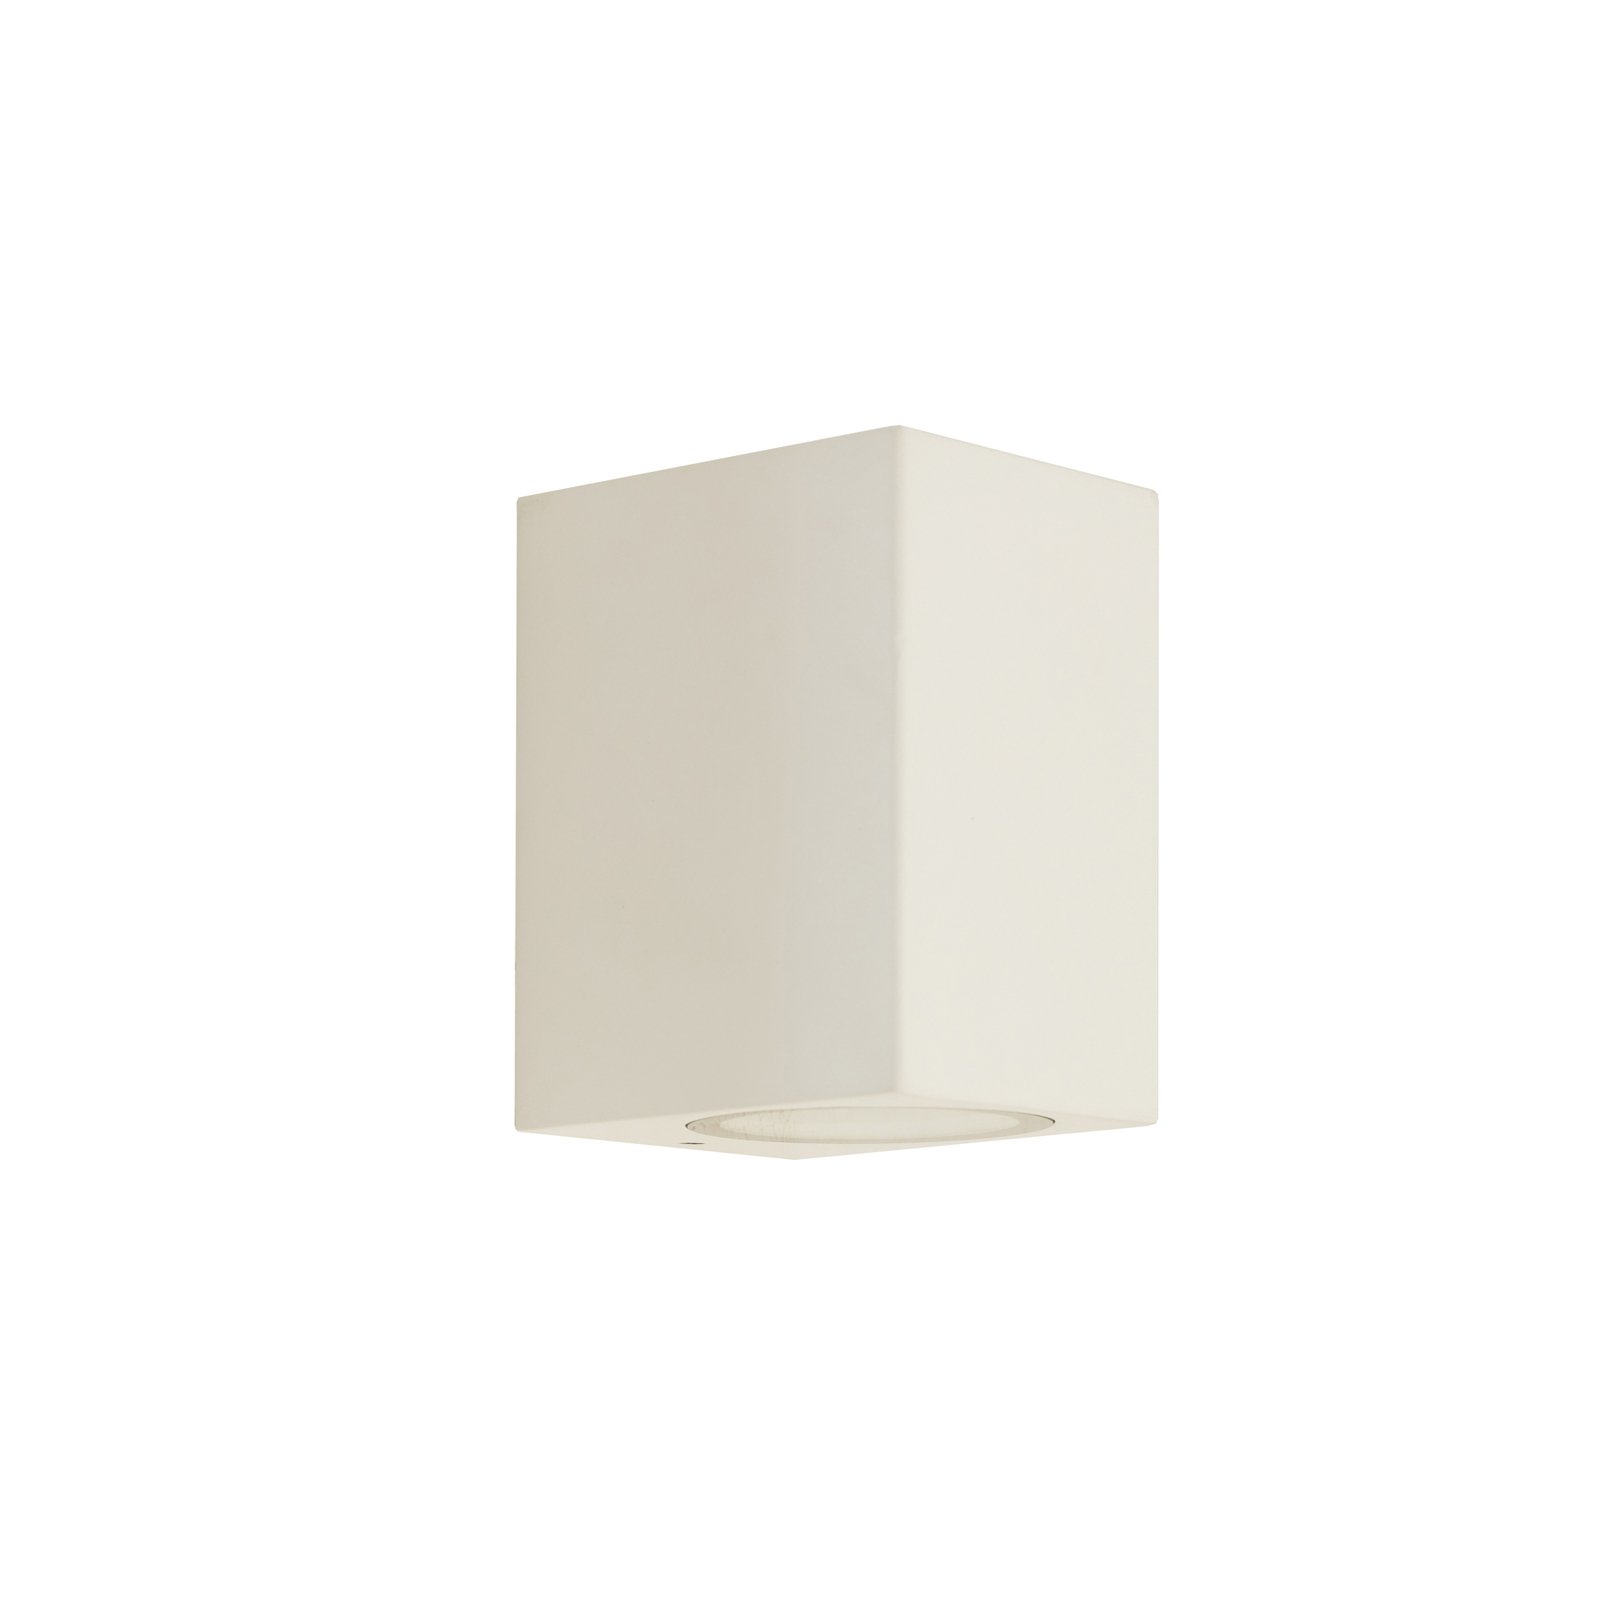 "Prios" lauko sieninis šviestuvas "Tetje", baltas, kampinis, 10 cm